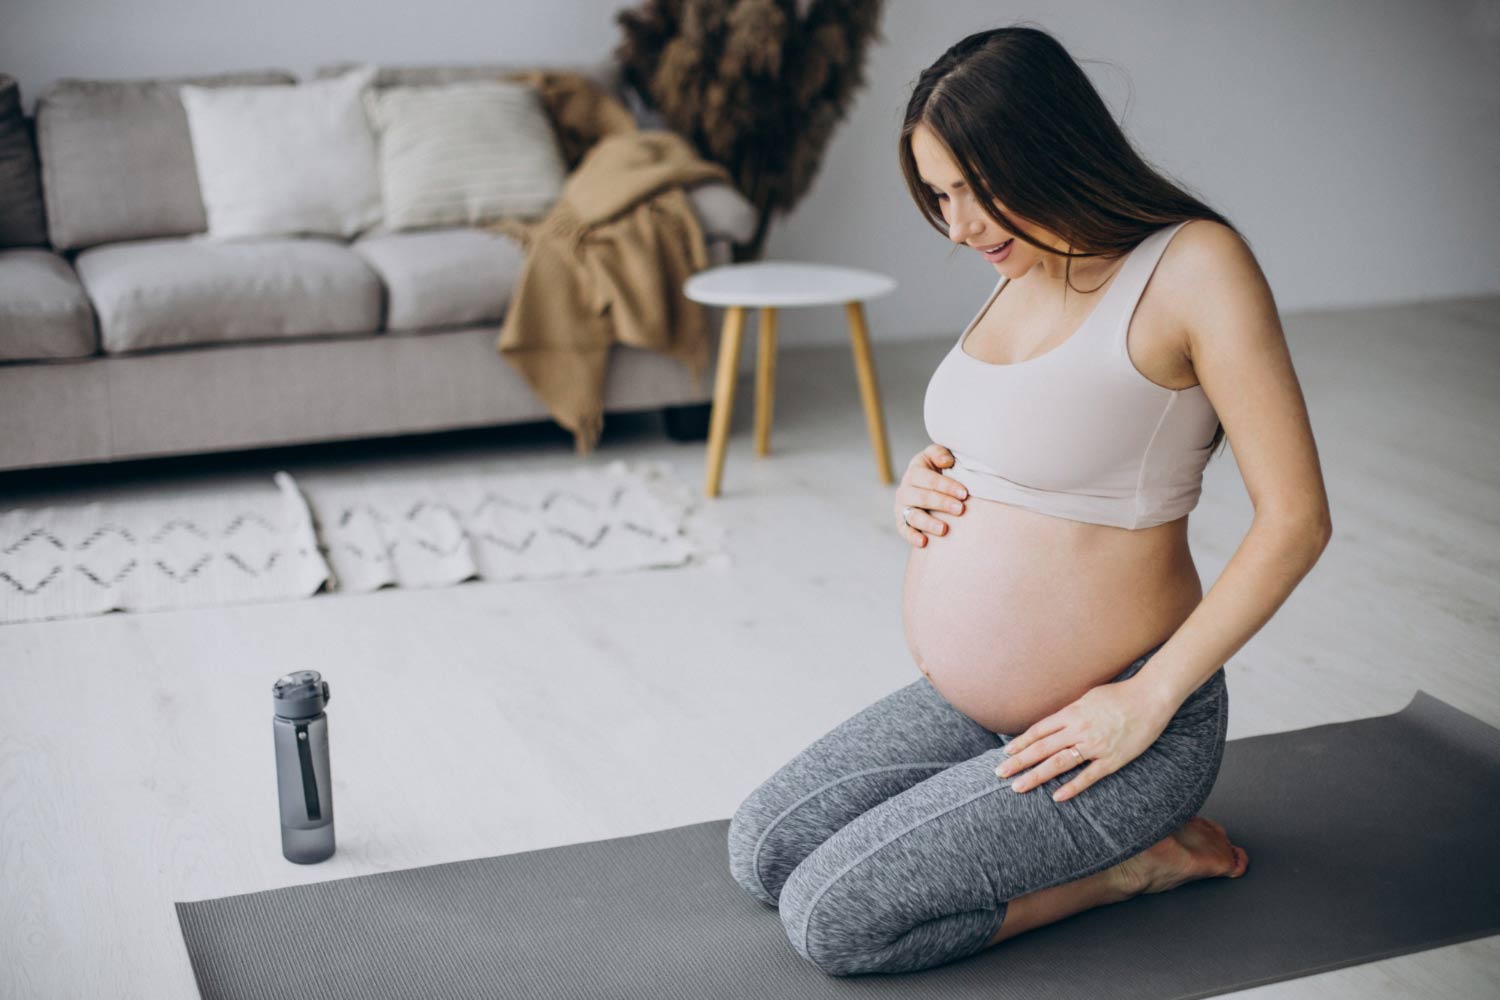 ejercicio en el embarazo